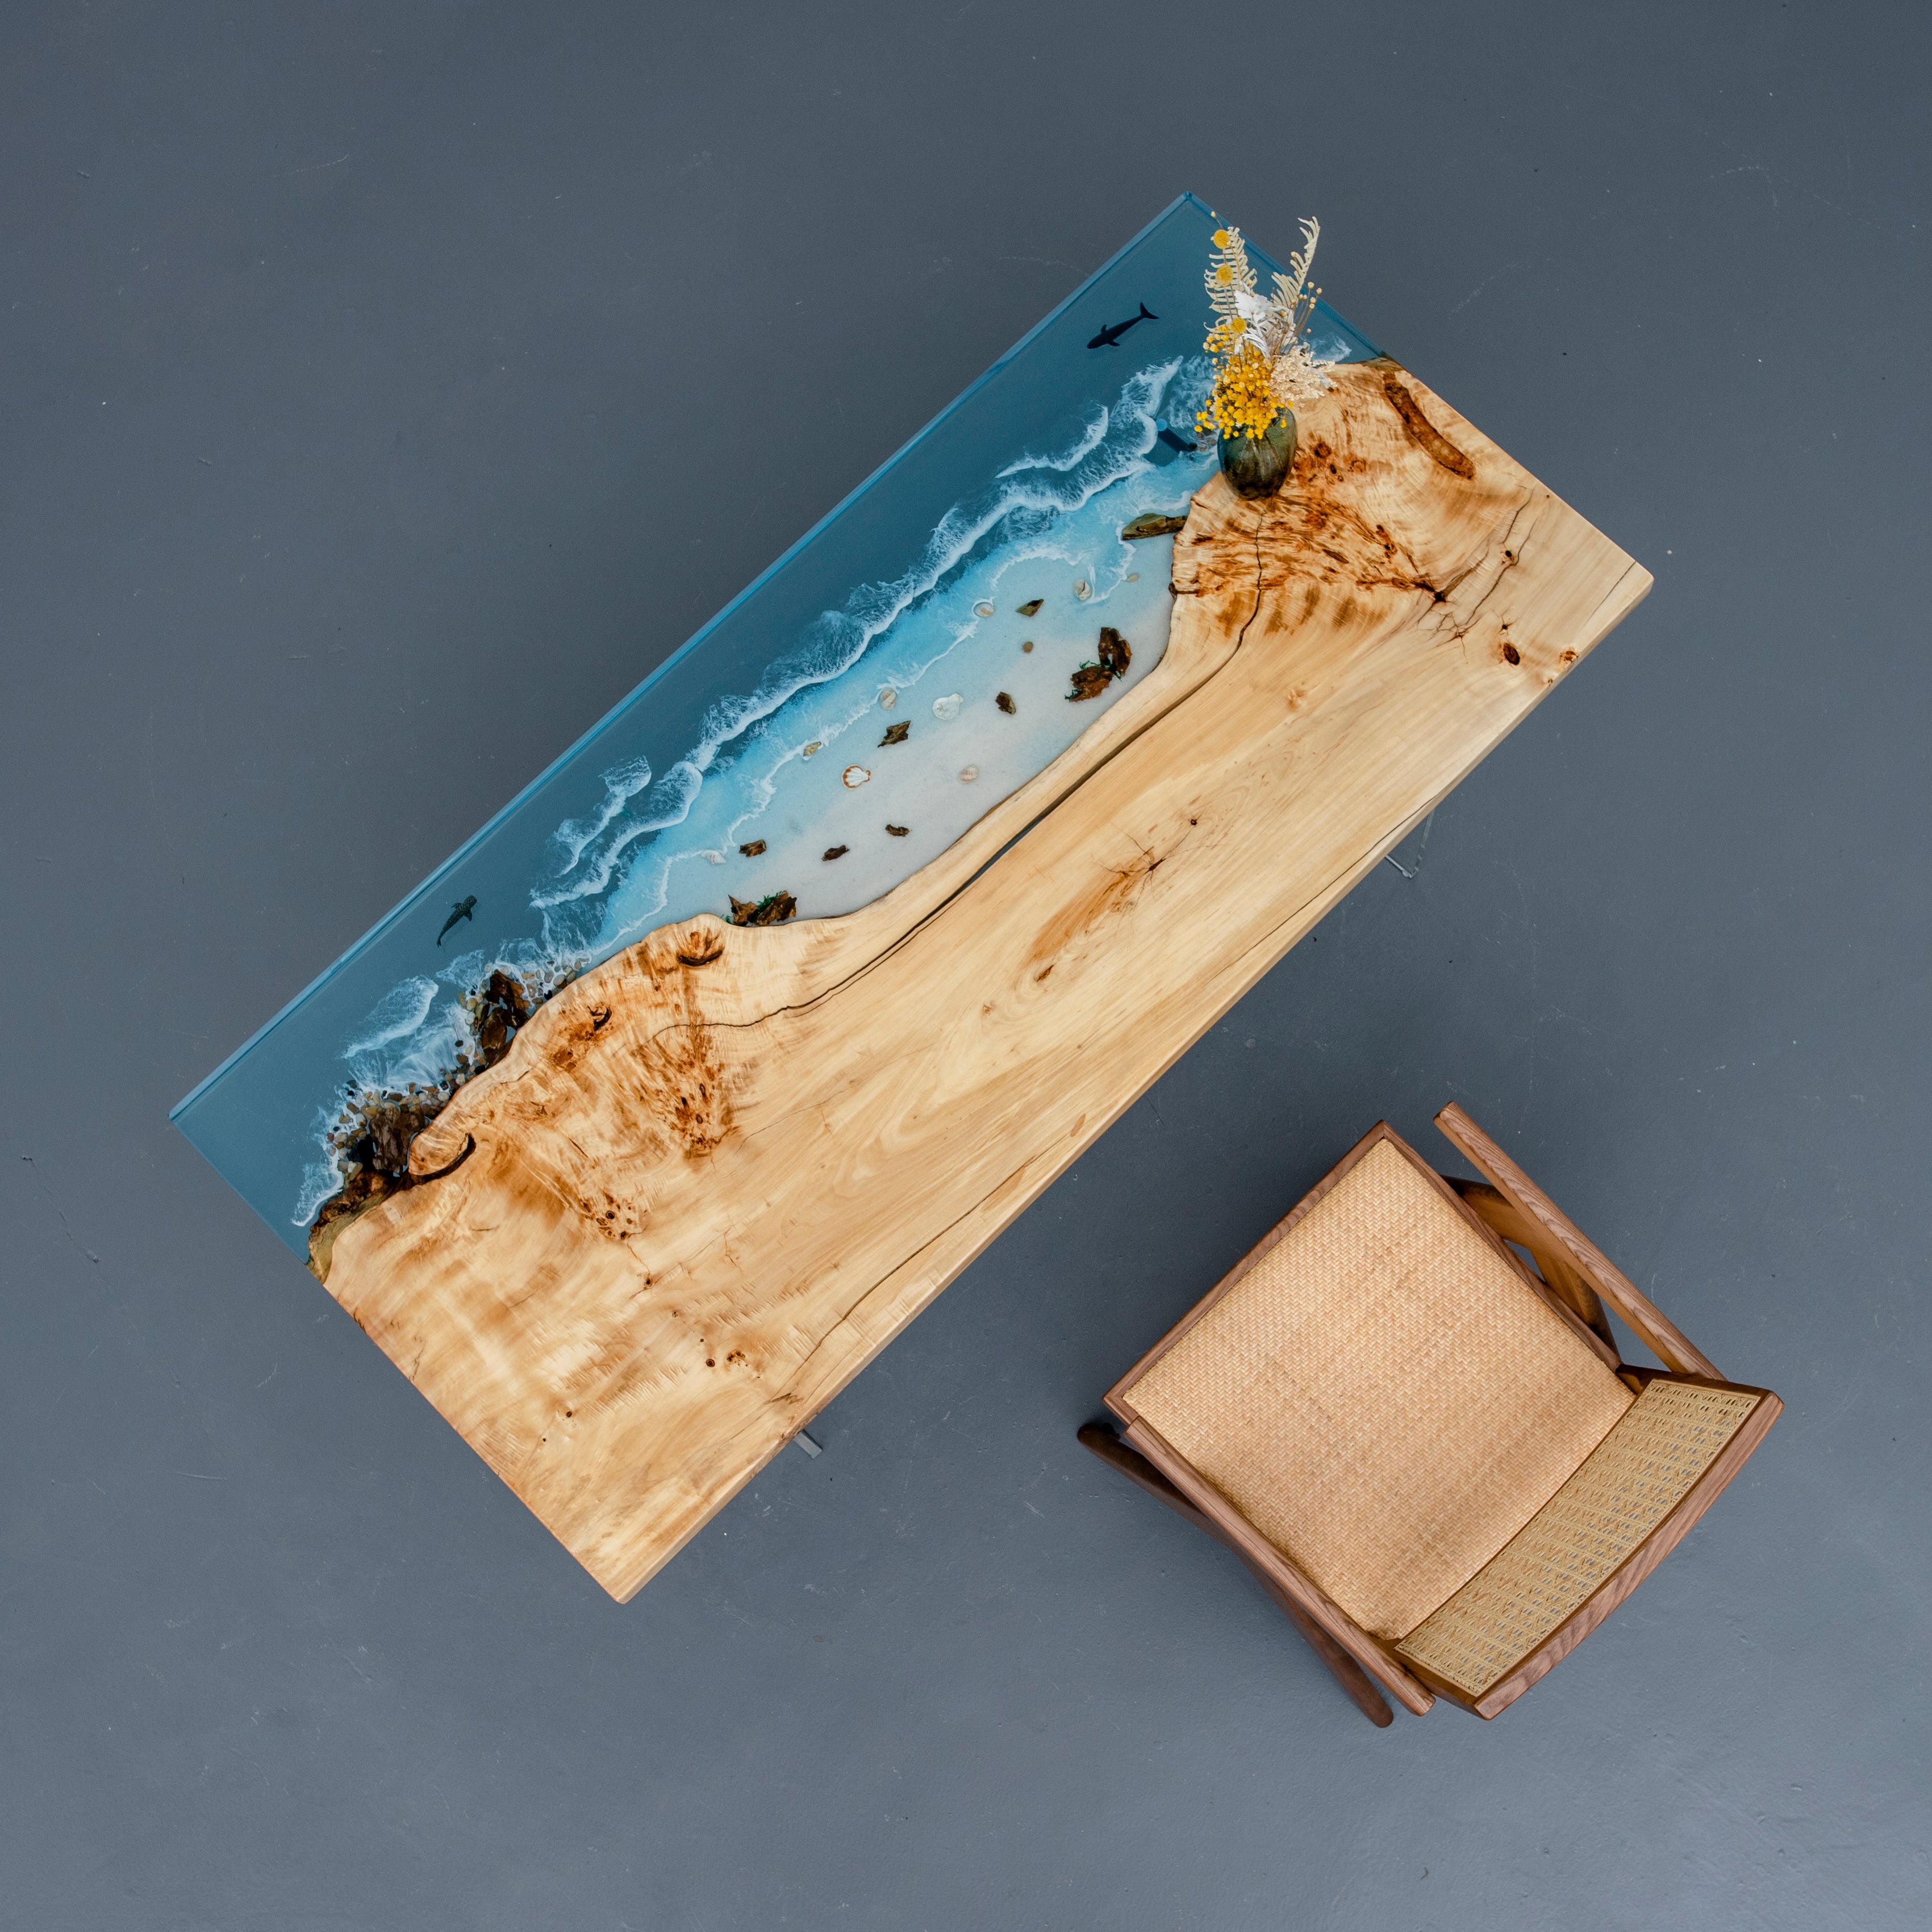 Tavolo in legno in resina epossidica Ocean, tavolo in resina epossidica